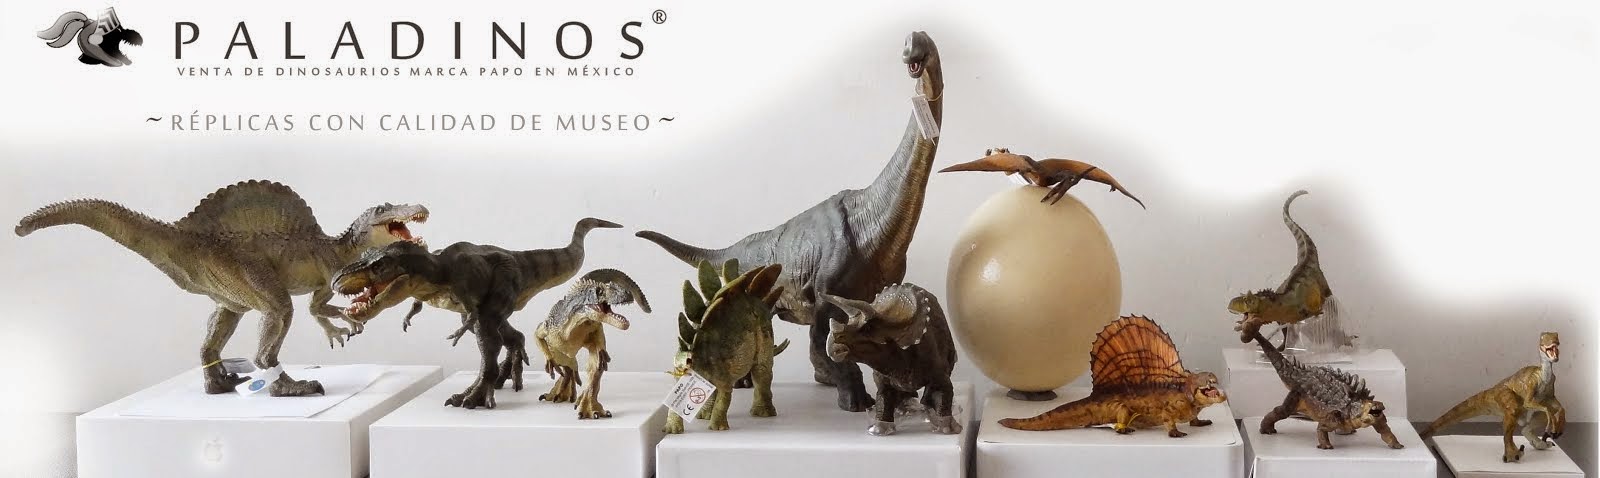 PALADINOS - Réplicas de Dinosaurios marca Papo en Mexico